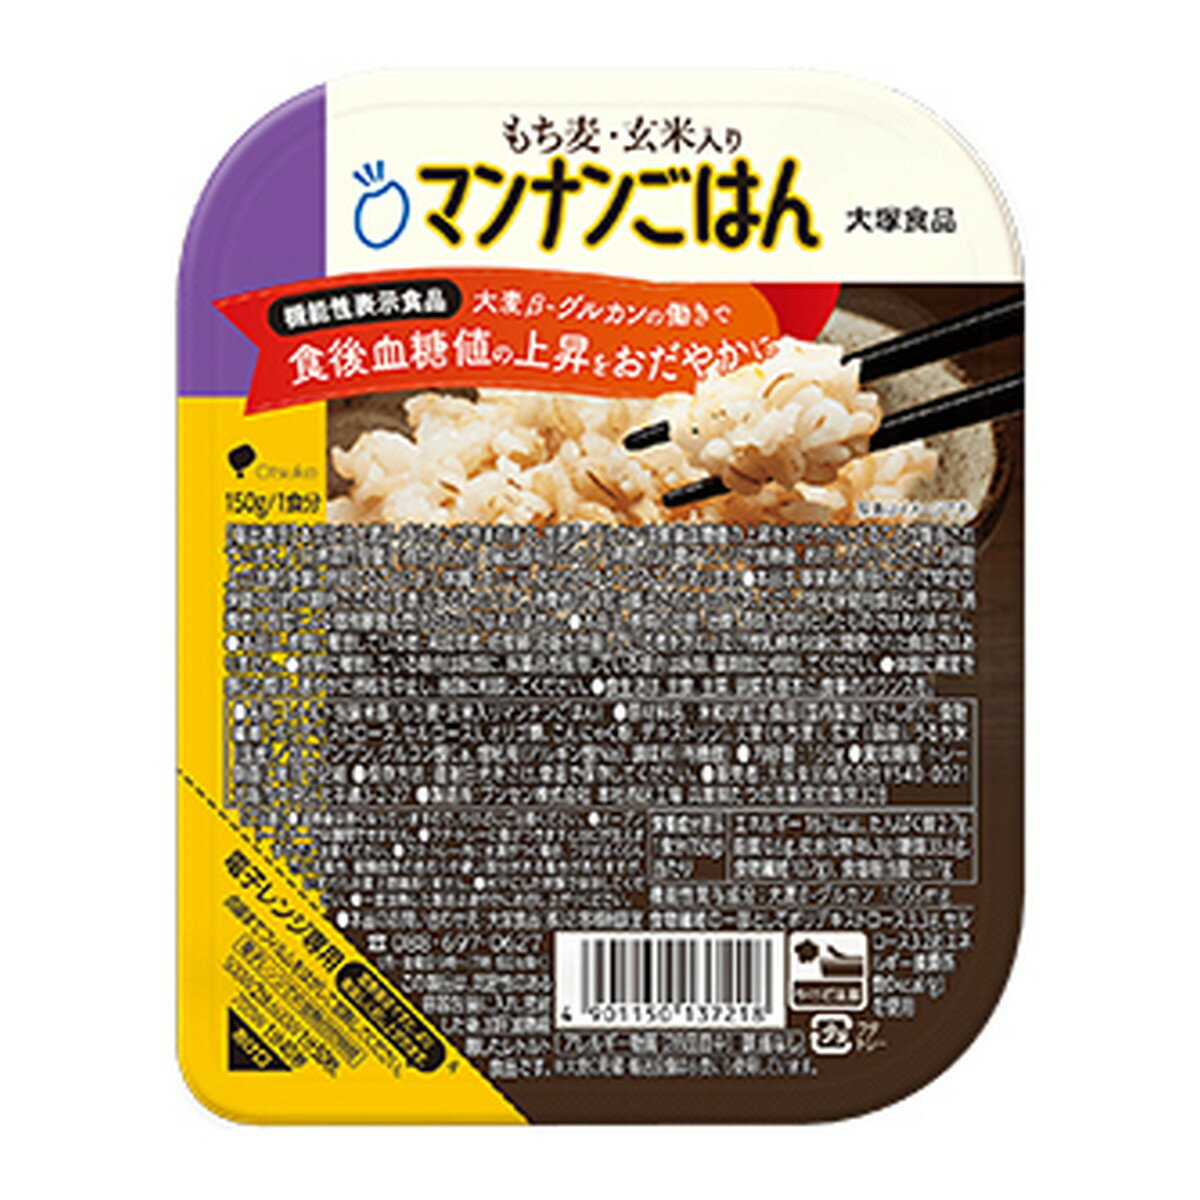 大塚食品 もち麦玄米入り マンナンごはん パック...の商品画像